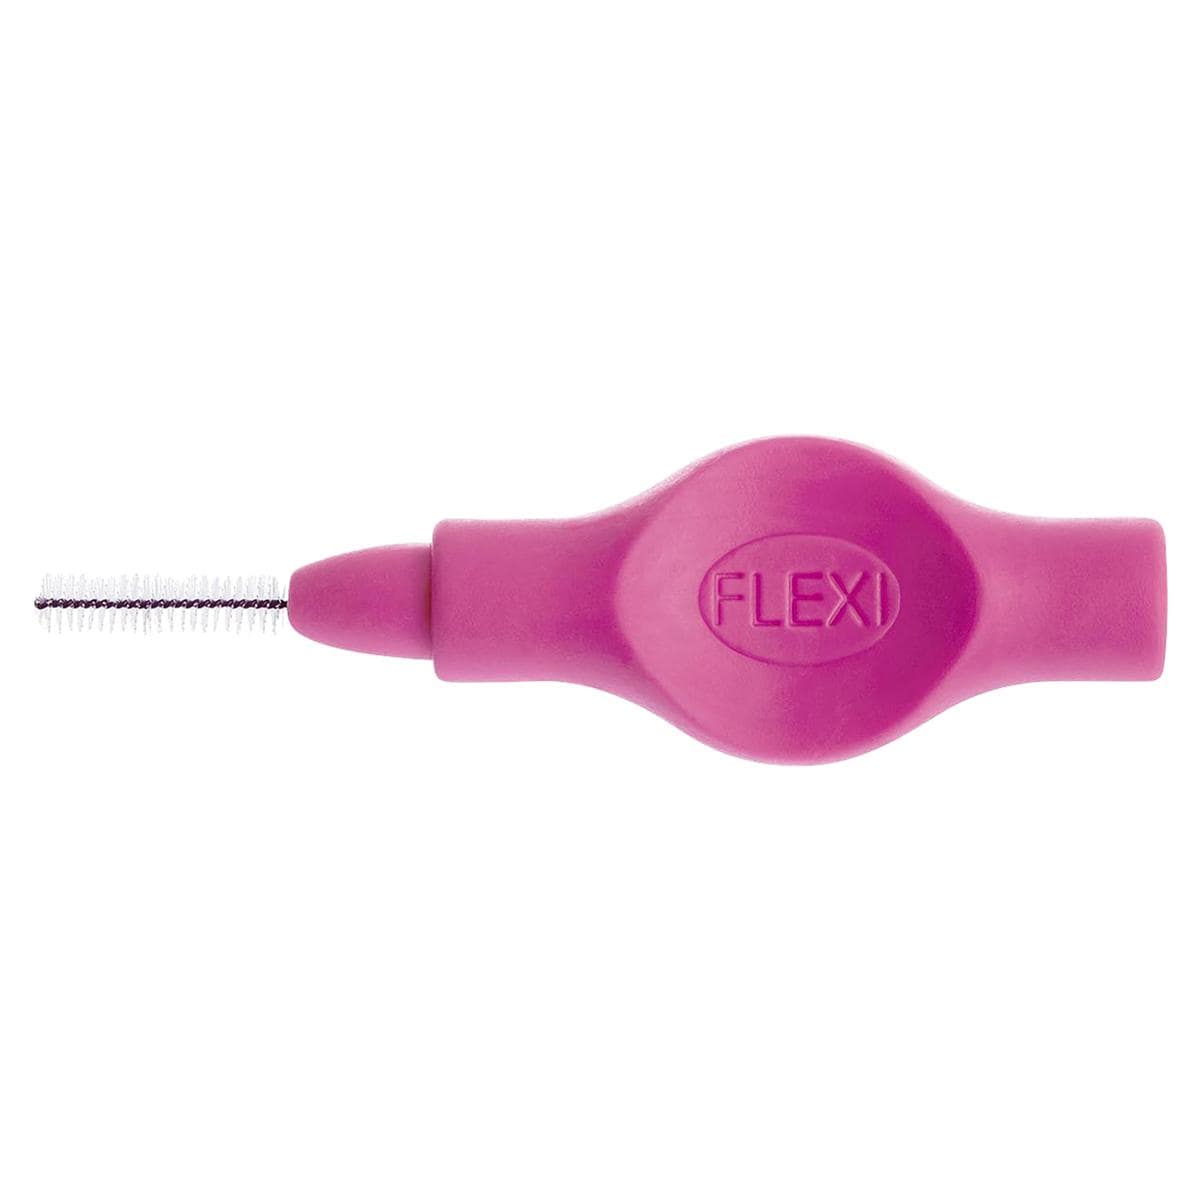 Flexi Interdentalbürsten - Value Pack - Coral - Micro Fine, Bürsten-Ø 0,7 mm, Draht-Ø 0,40 mm